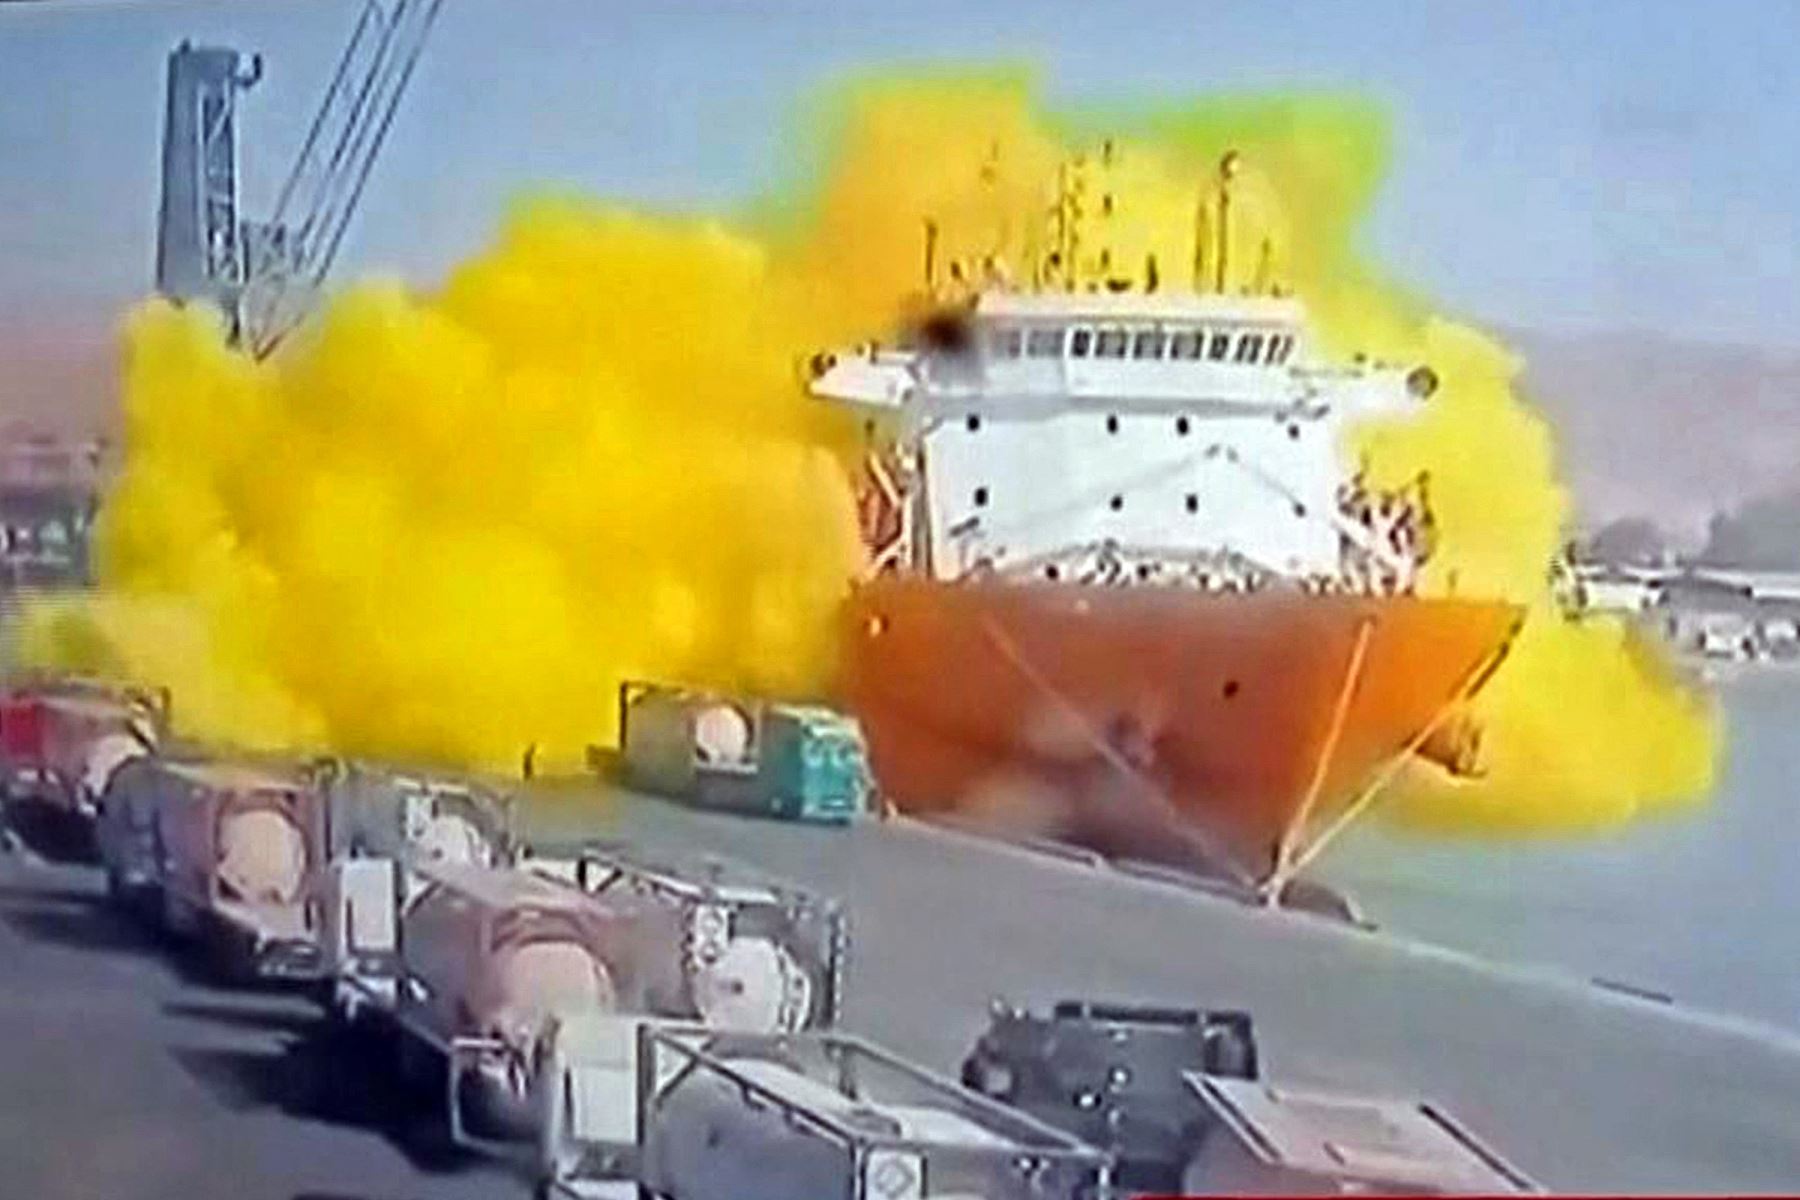 La fuerza de la caída perforó el contenedor presurizado, envolviendo al carguero Forest 6 en un velo de gas amarillo brillante, según mostraron imágenes de circuito cerrado de televisión. Foto: AFP